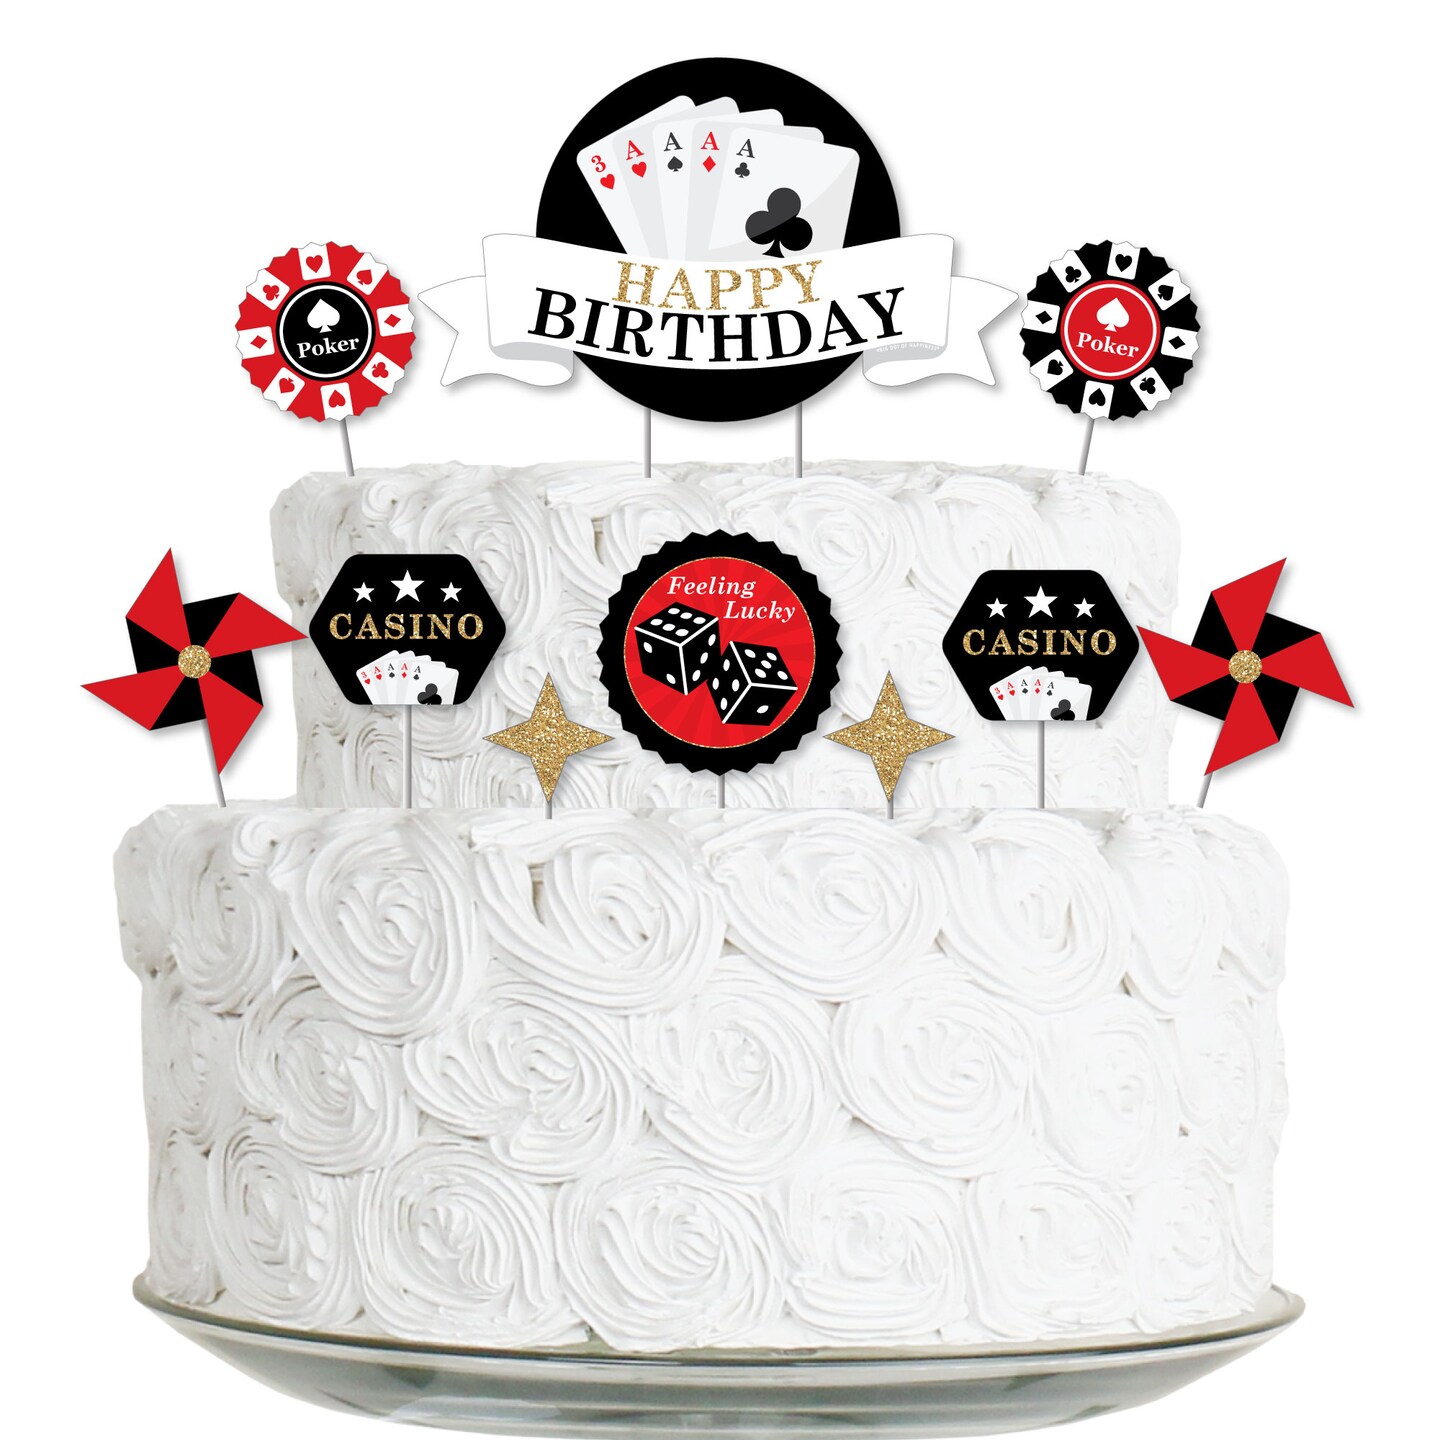 Casino Theme three tiers cake | Casino cakes, Three tier cake, 50th cake